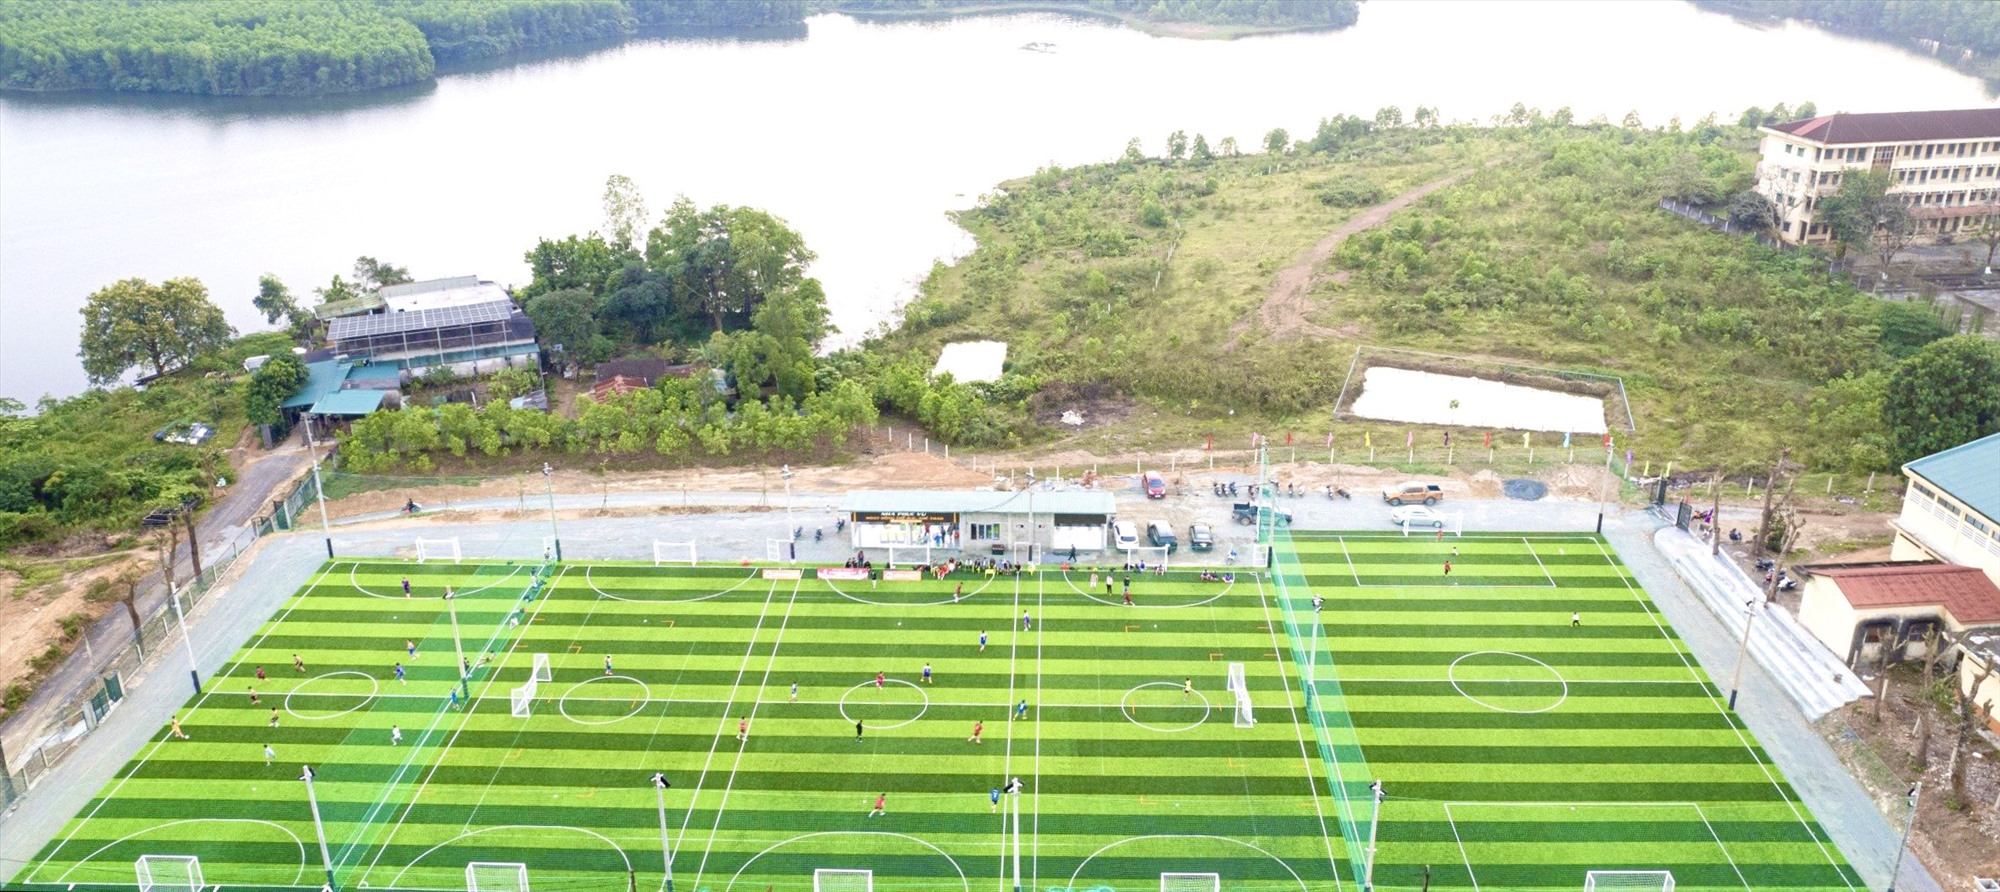 Sân bóng đá nhân tạo Khe Mây được đầu tư theo hình thức xã hội hóa, phục vụ tốt cho việc tập luyện và thi đấu bóng đá - Ảnh: D.C